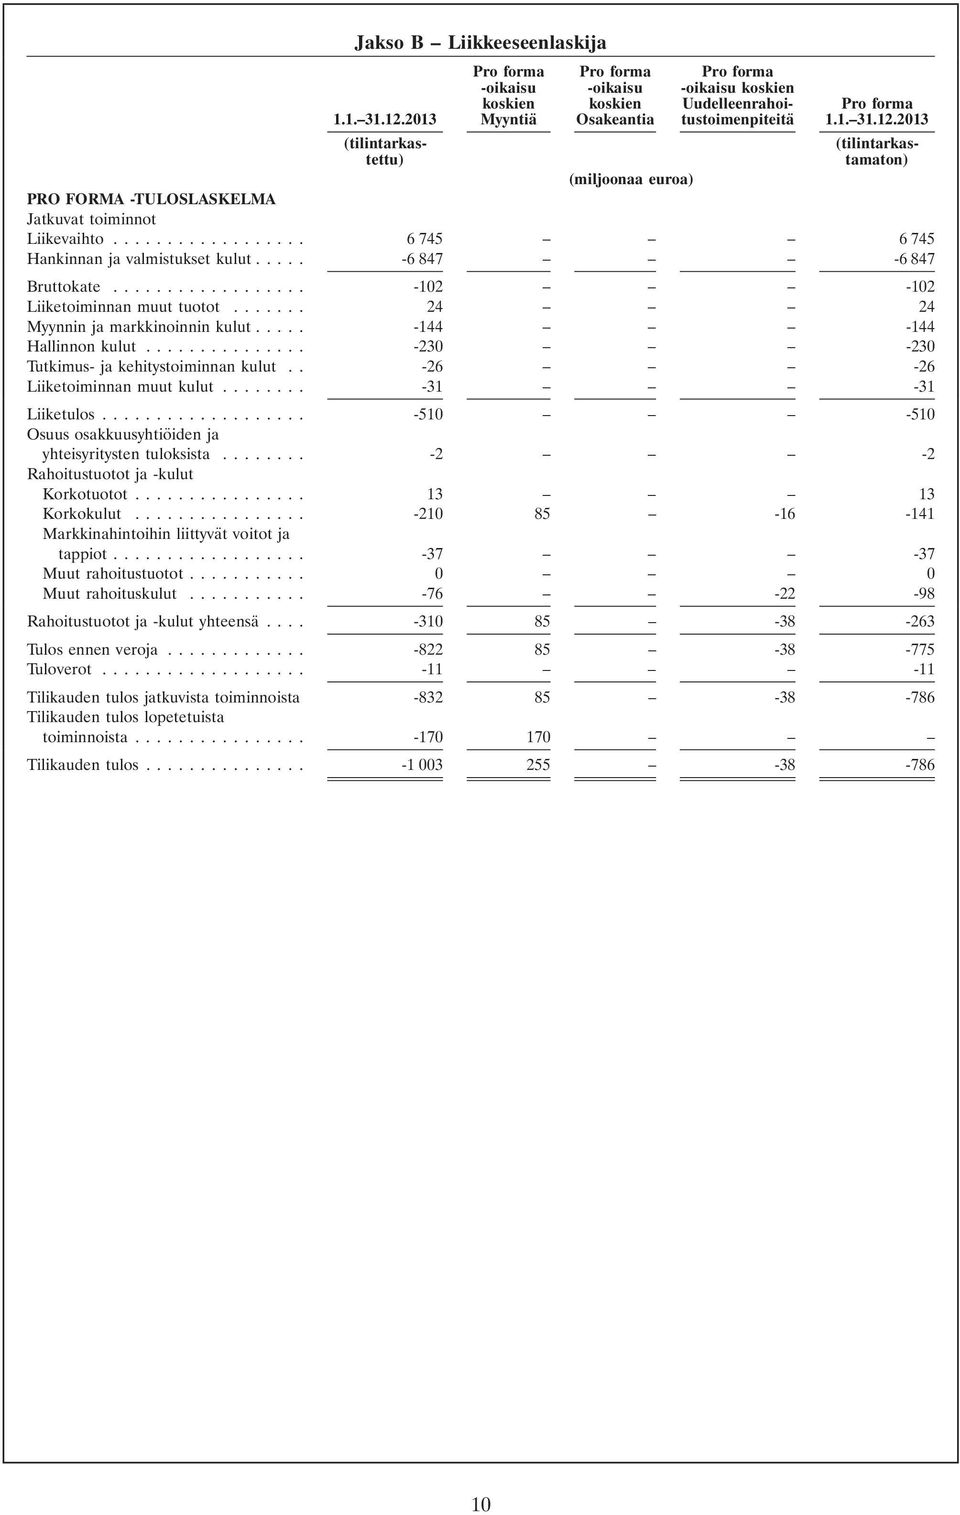 2013 (tilintarkas- (tilintarkastettu) tamaton) (miljoonaa euroa) PRO FORMA -TULOSLASKELMA Jatkuvat toiminnot Liikevaihto... 6745 6 745 Hankinnan ja valmistukset kulut... -6847-6 847 Bruttokate.